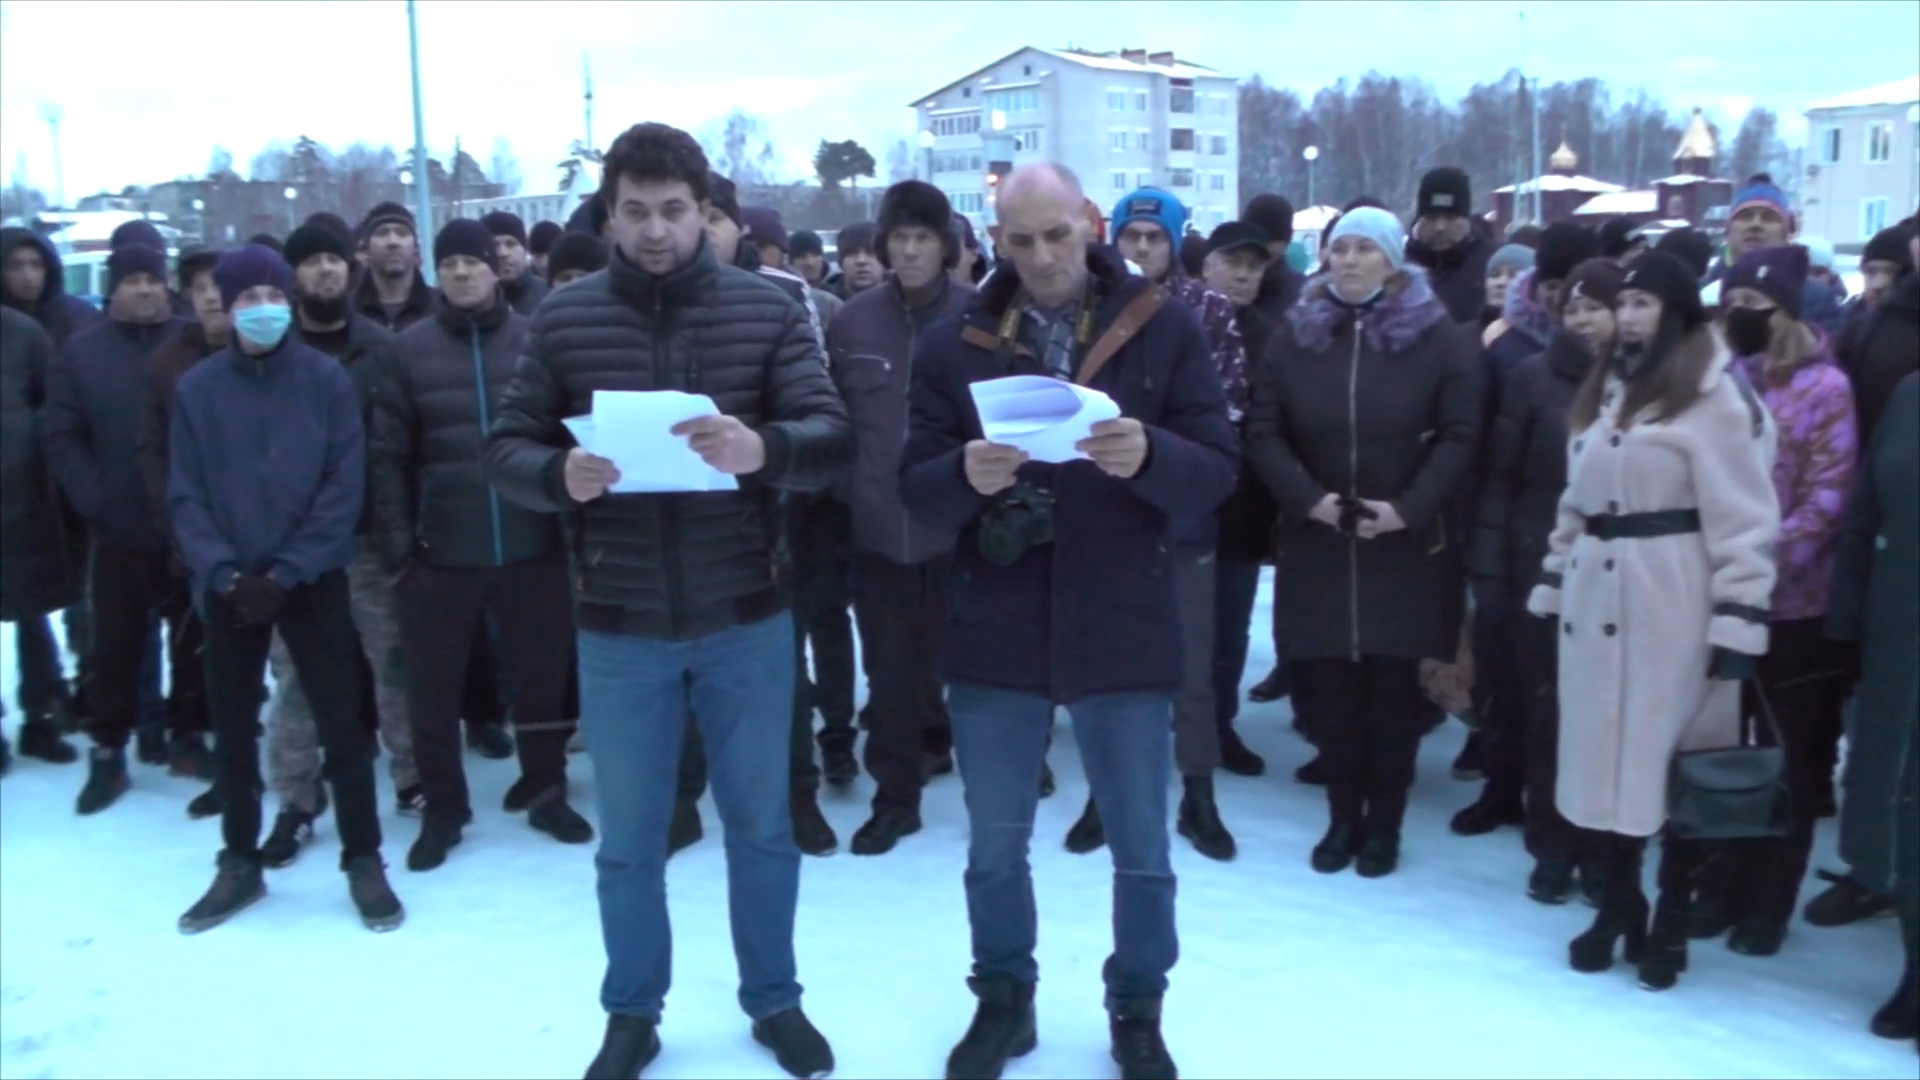 Участниками массового обращения в Первомайске за отмену...